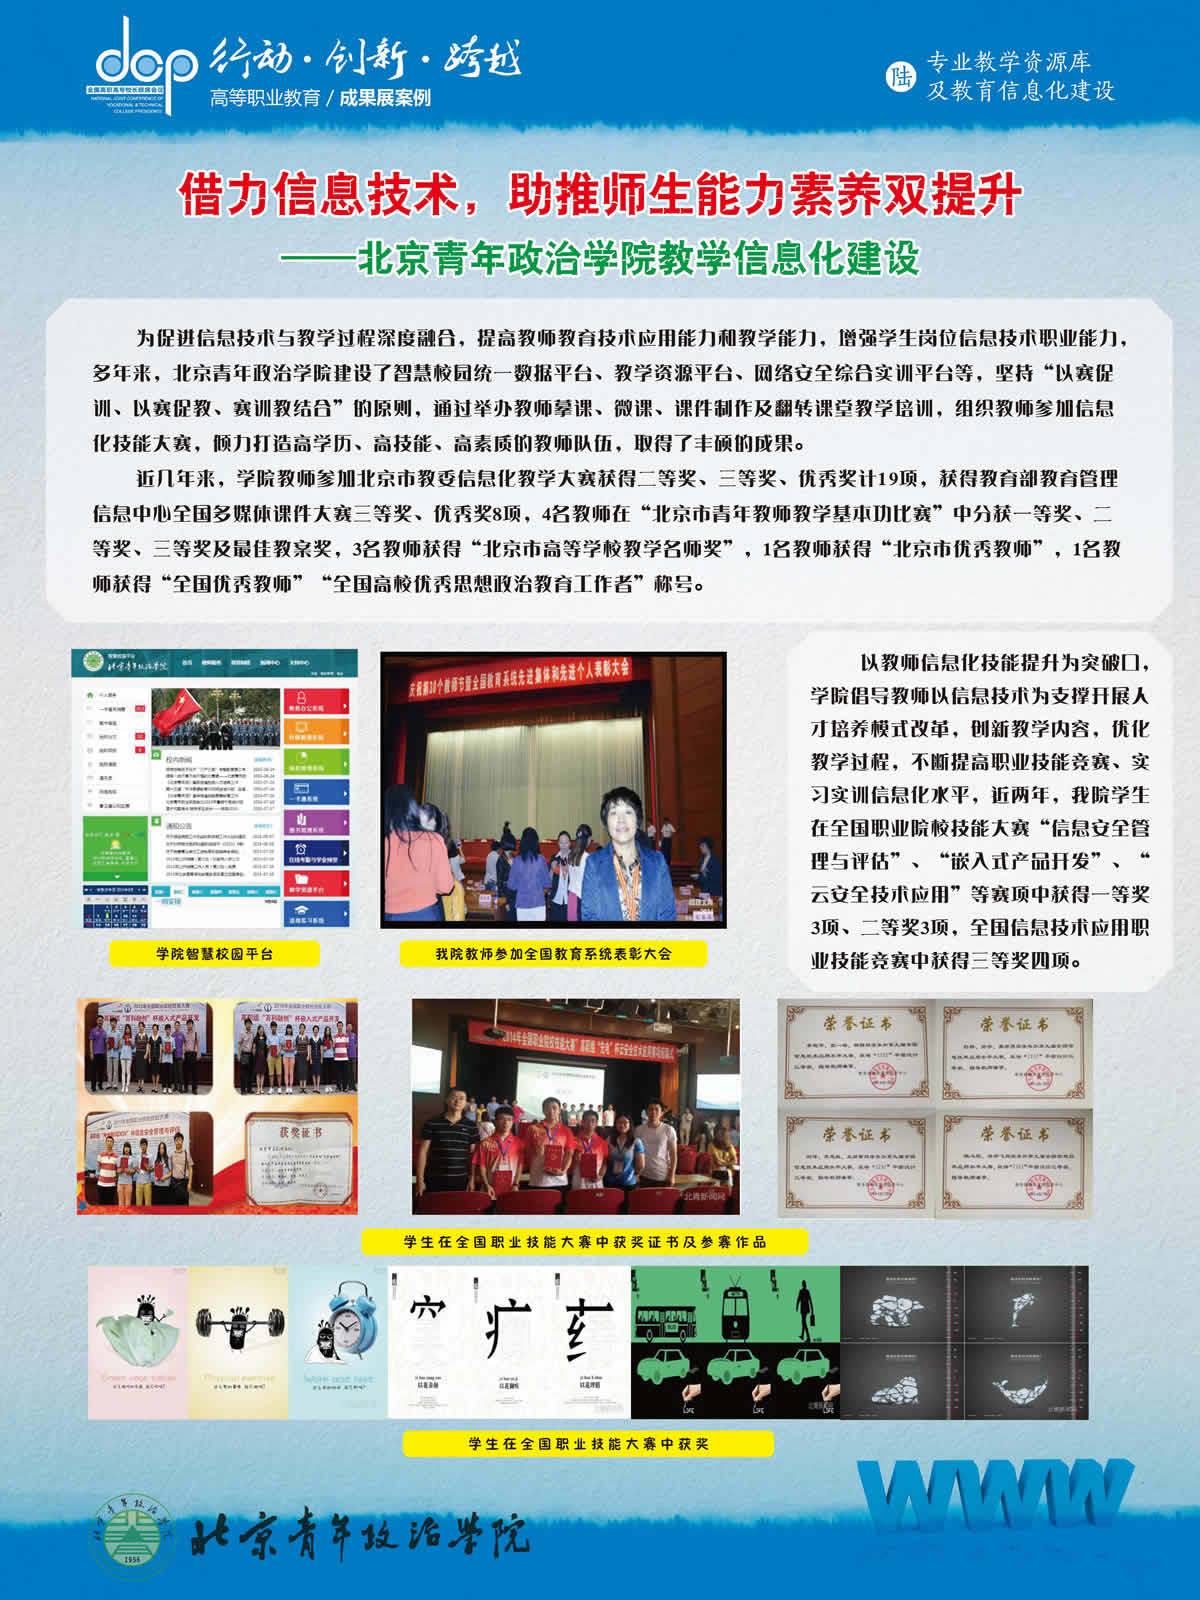 北京青年政治学院 宣传展板 专业教学资源库及教育信息化建设.jpg